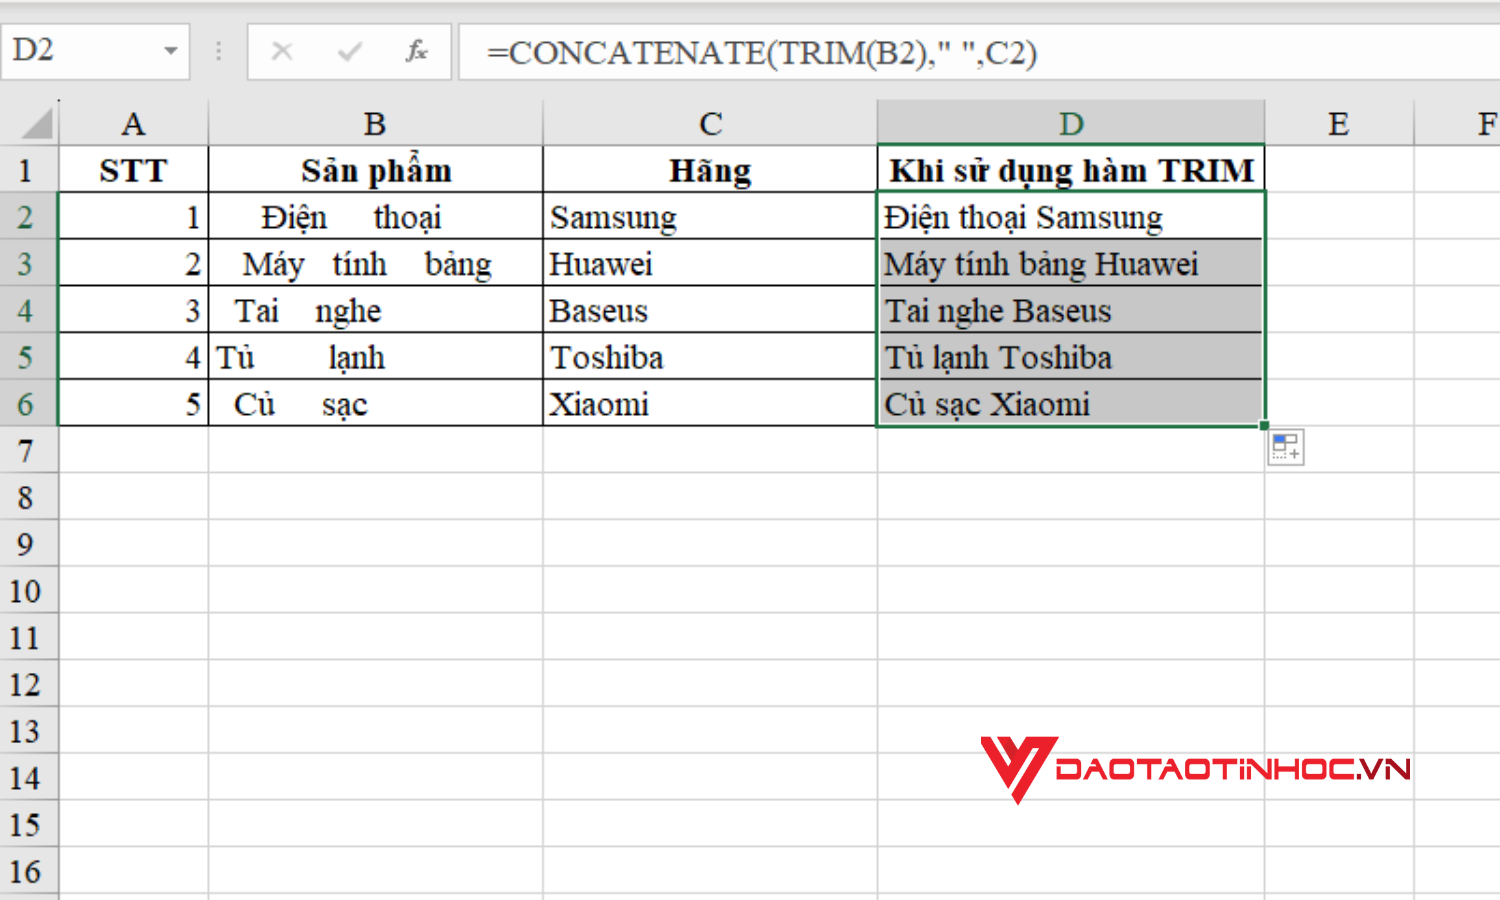 Hướng dẫn cách dùng hàm TRIM Excel kết hợp hàm CONCATENATE - Bước 2